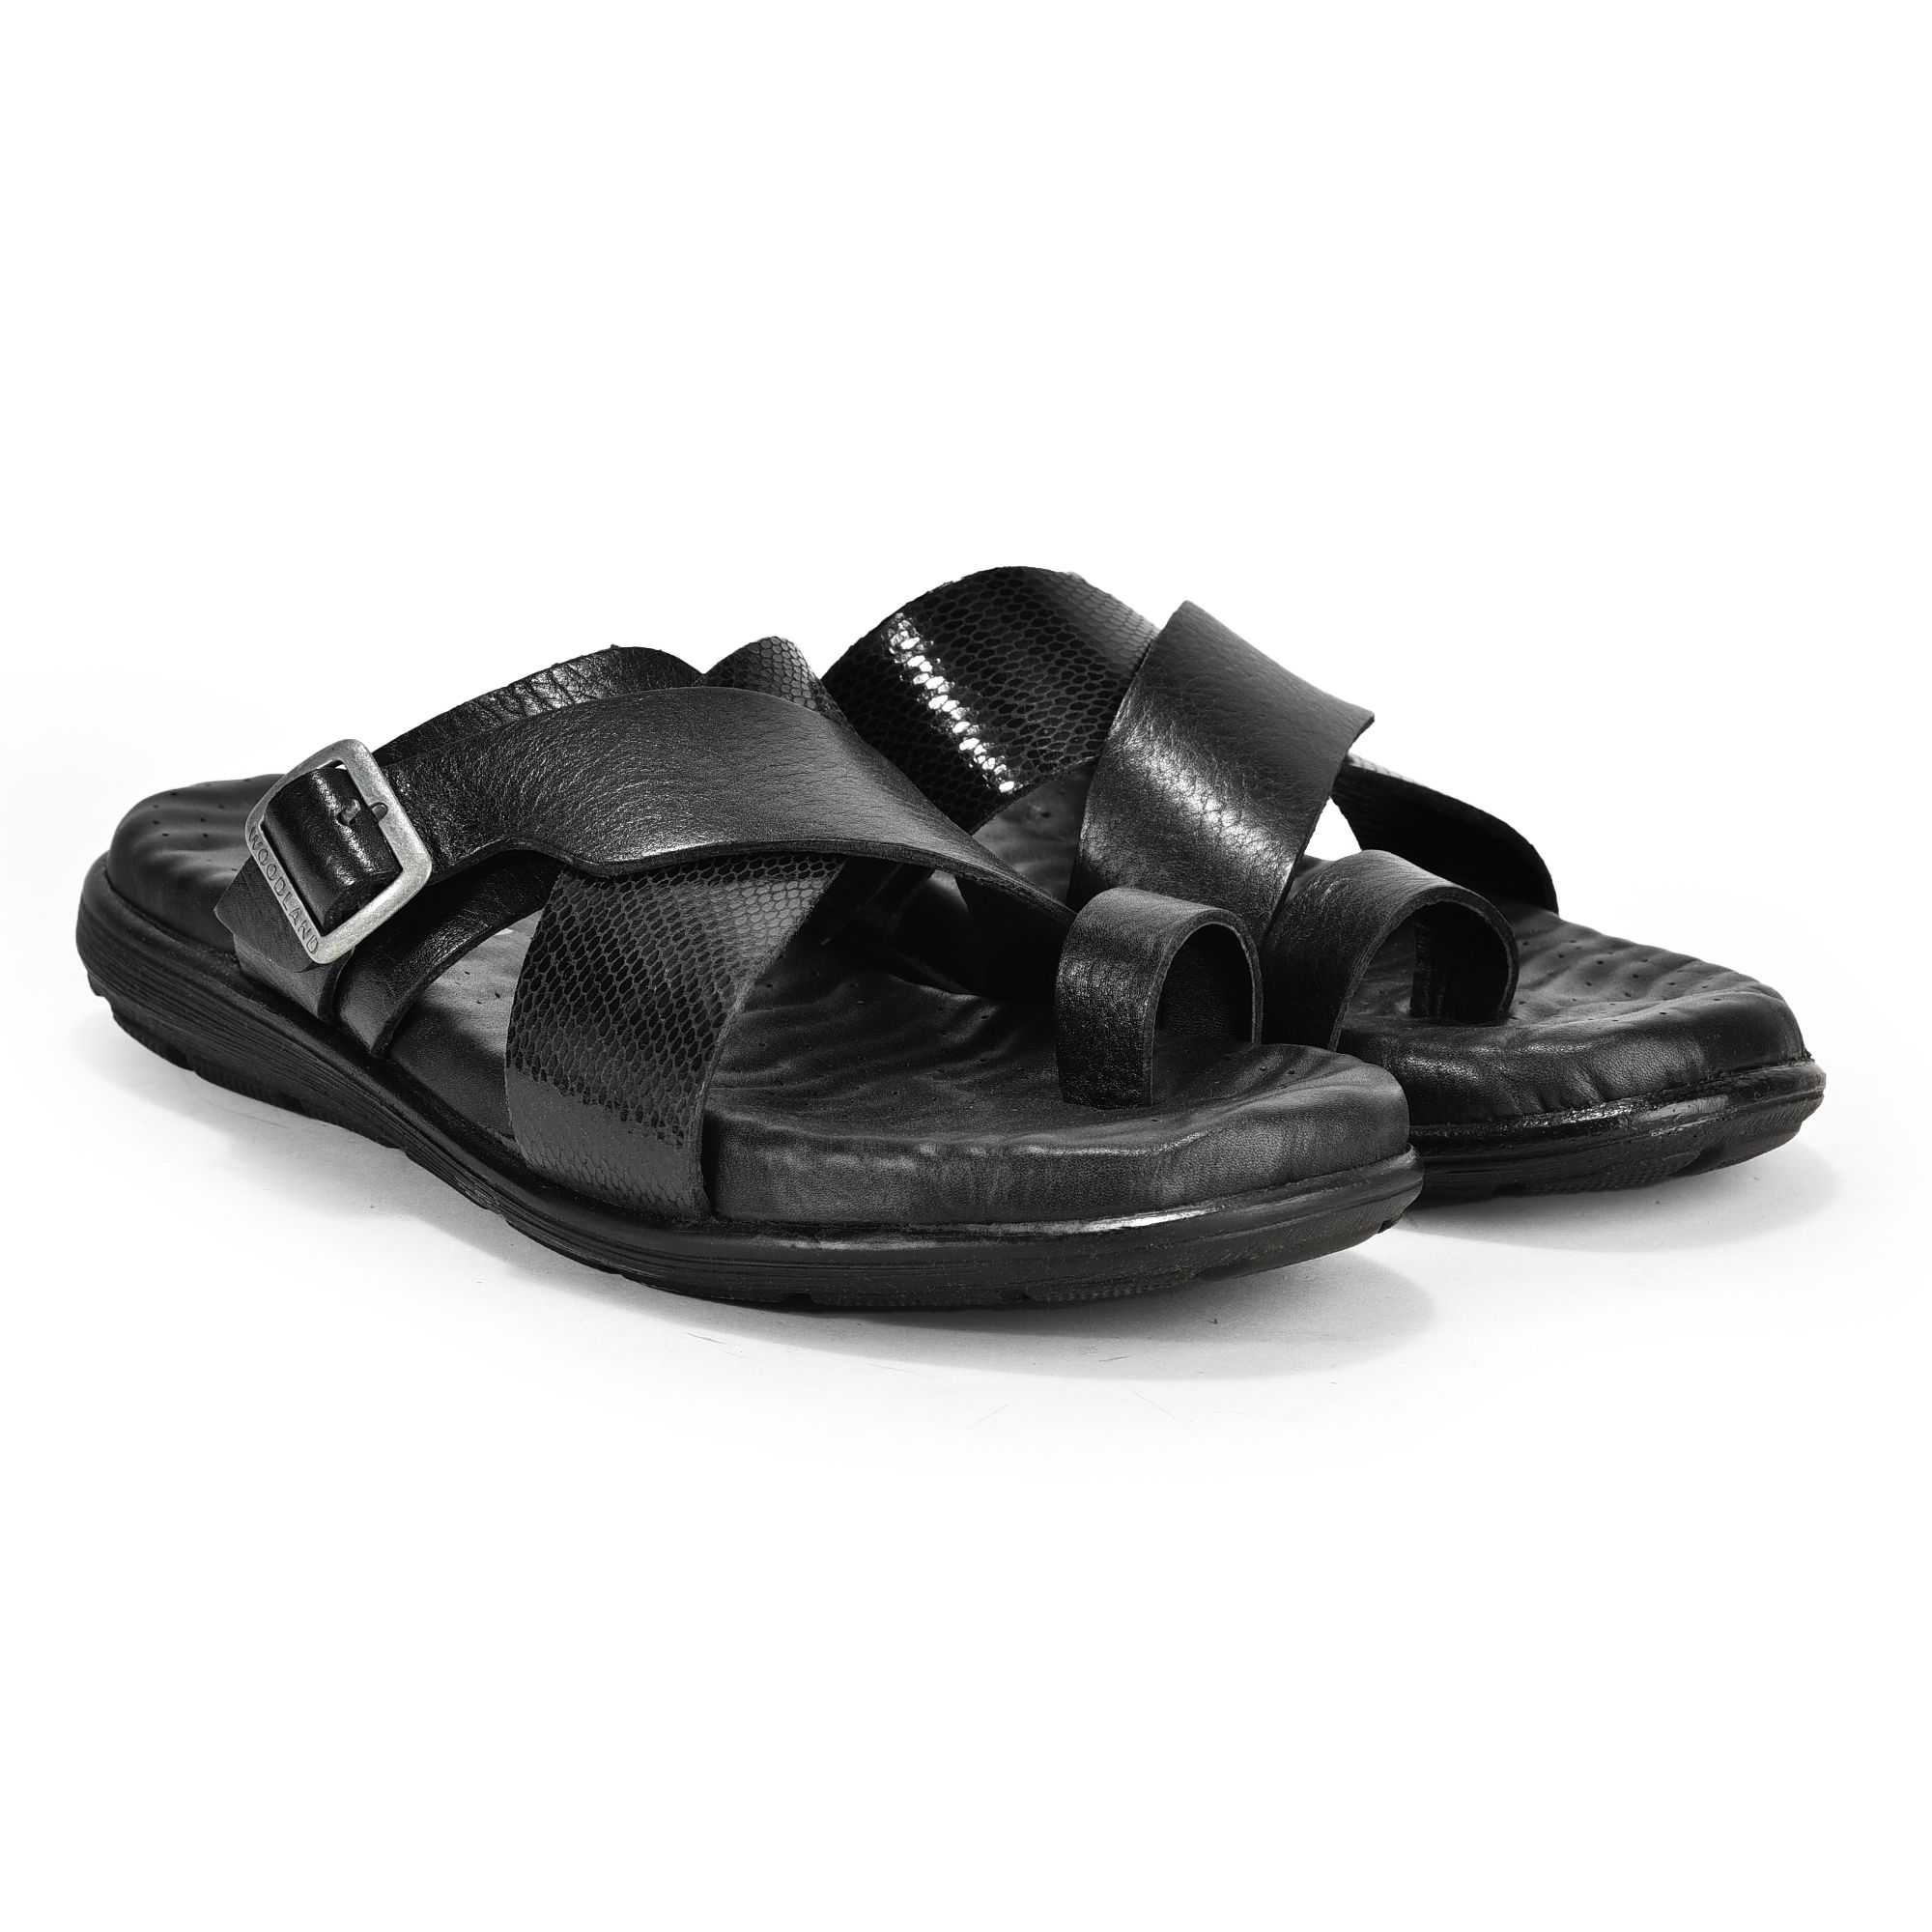 Black toe grip sandal for men